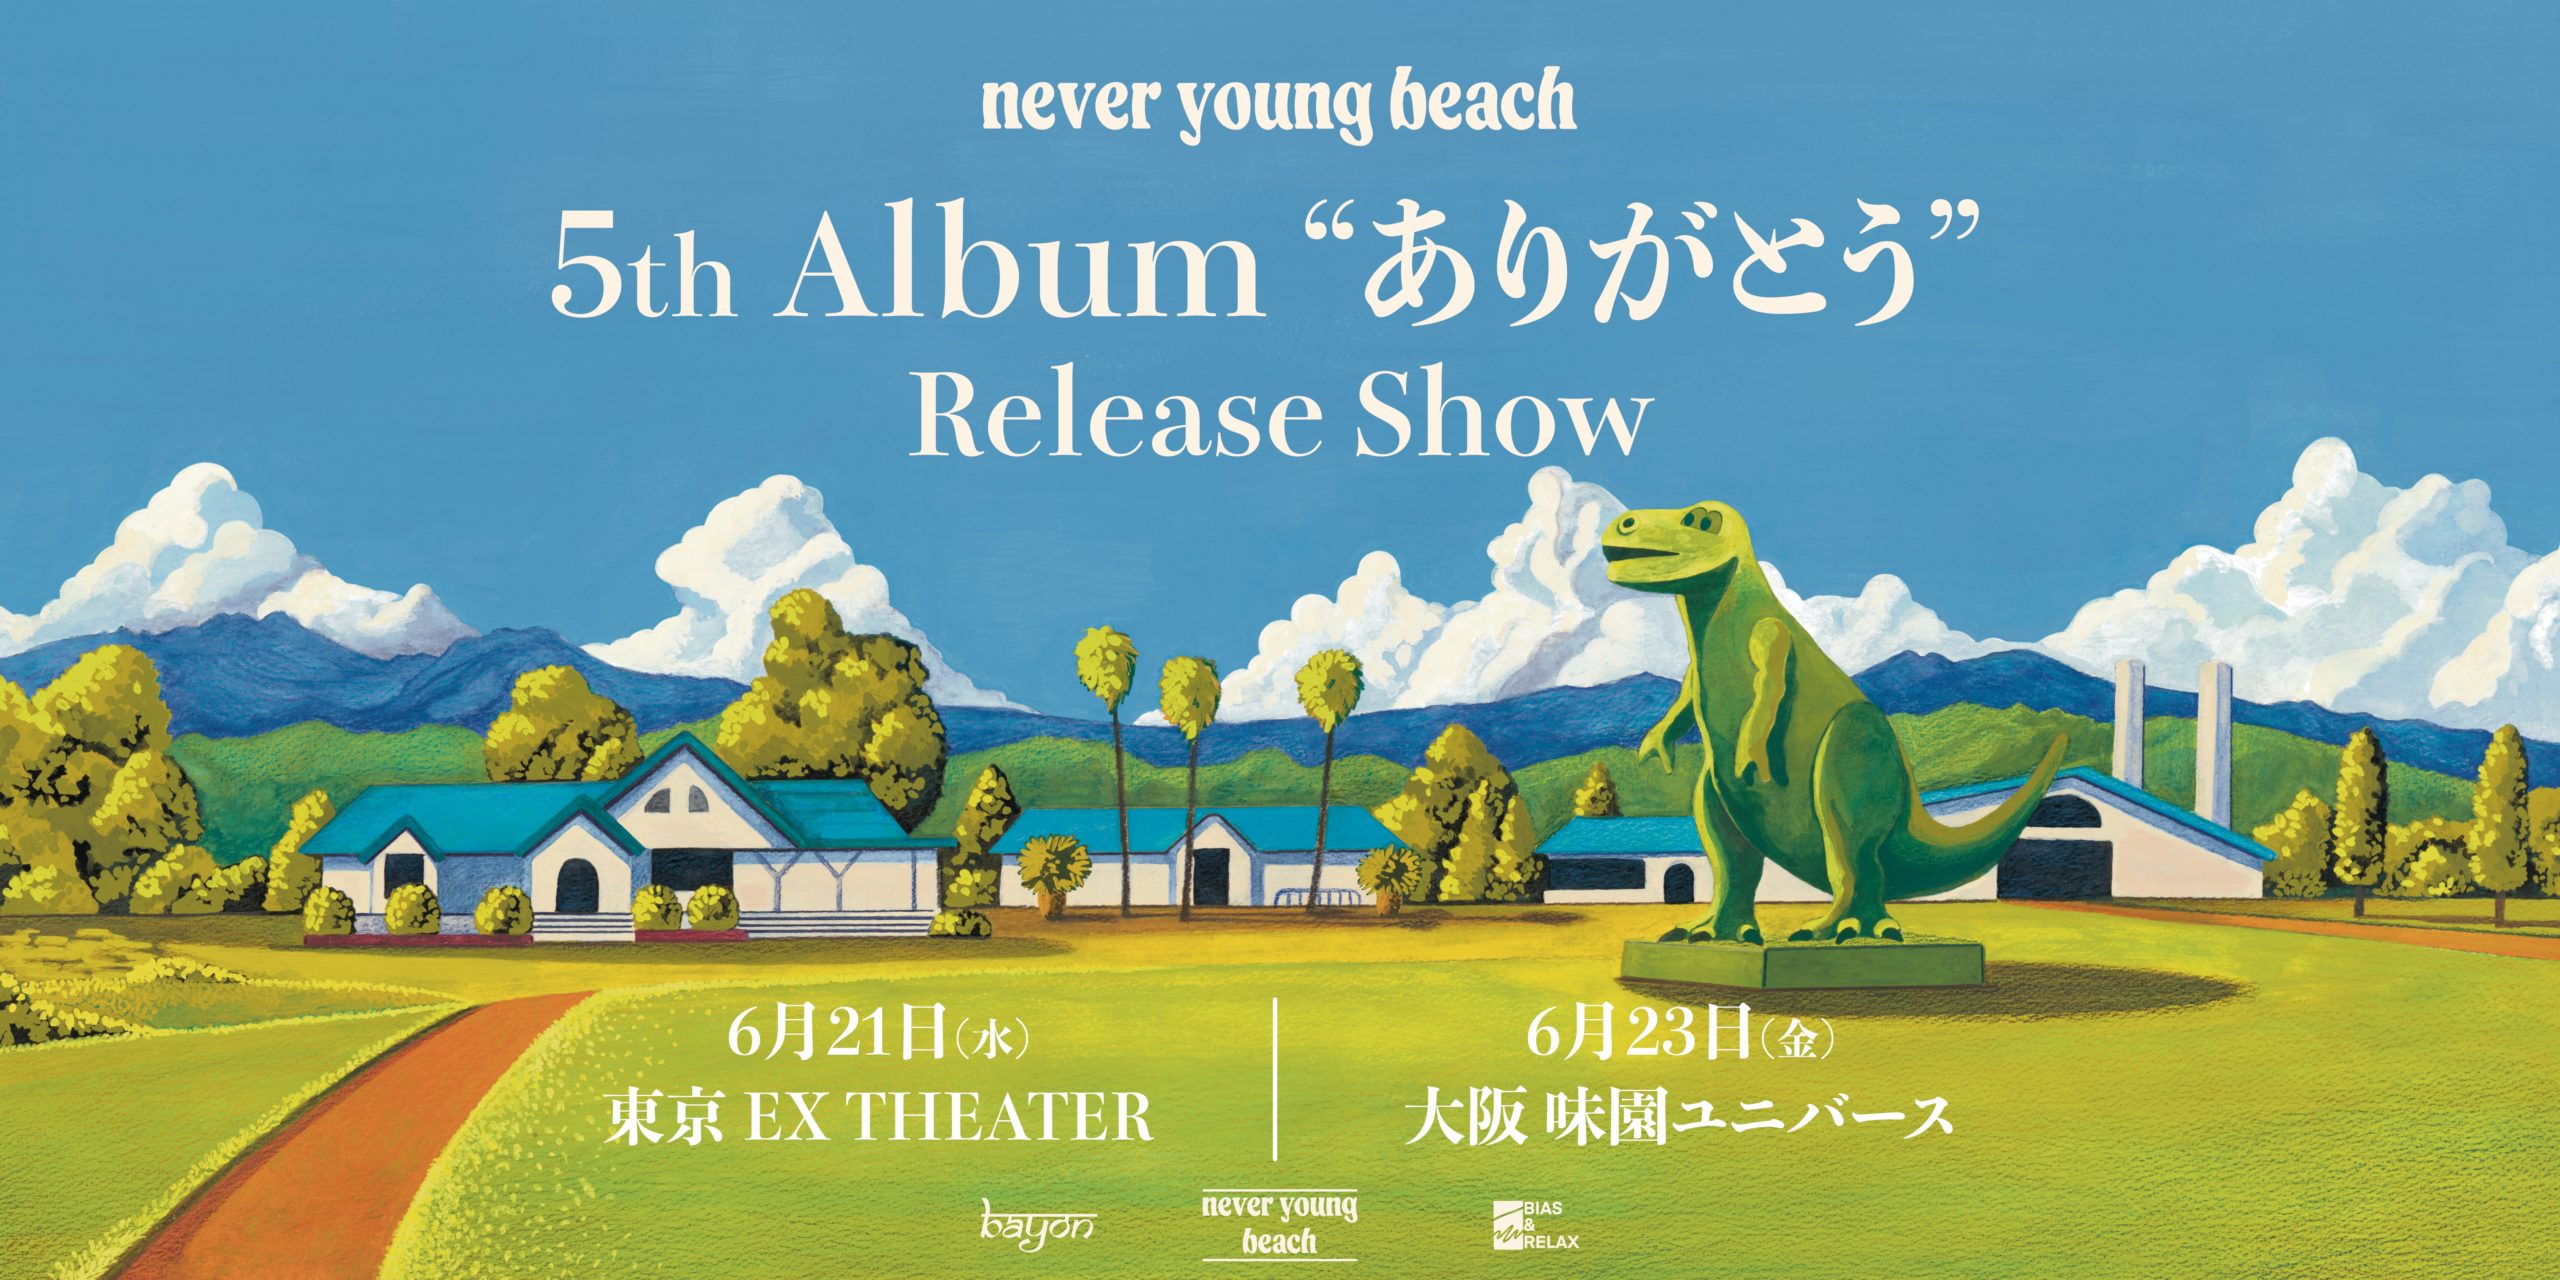 5th Album “ありがとう” Release Show 東京 / 大阪 チケット一般発売が 